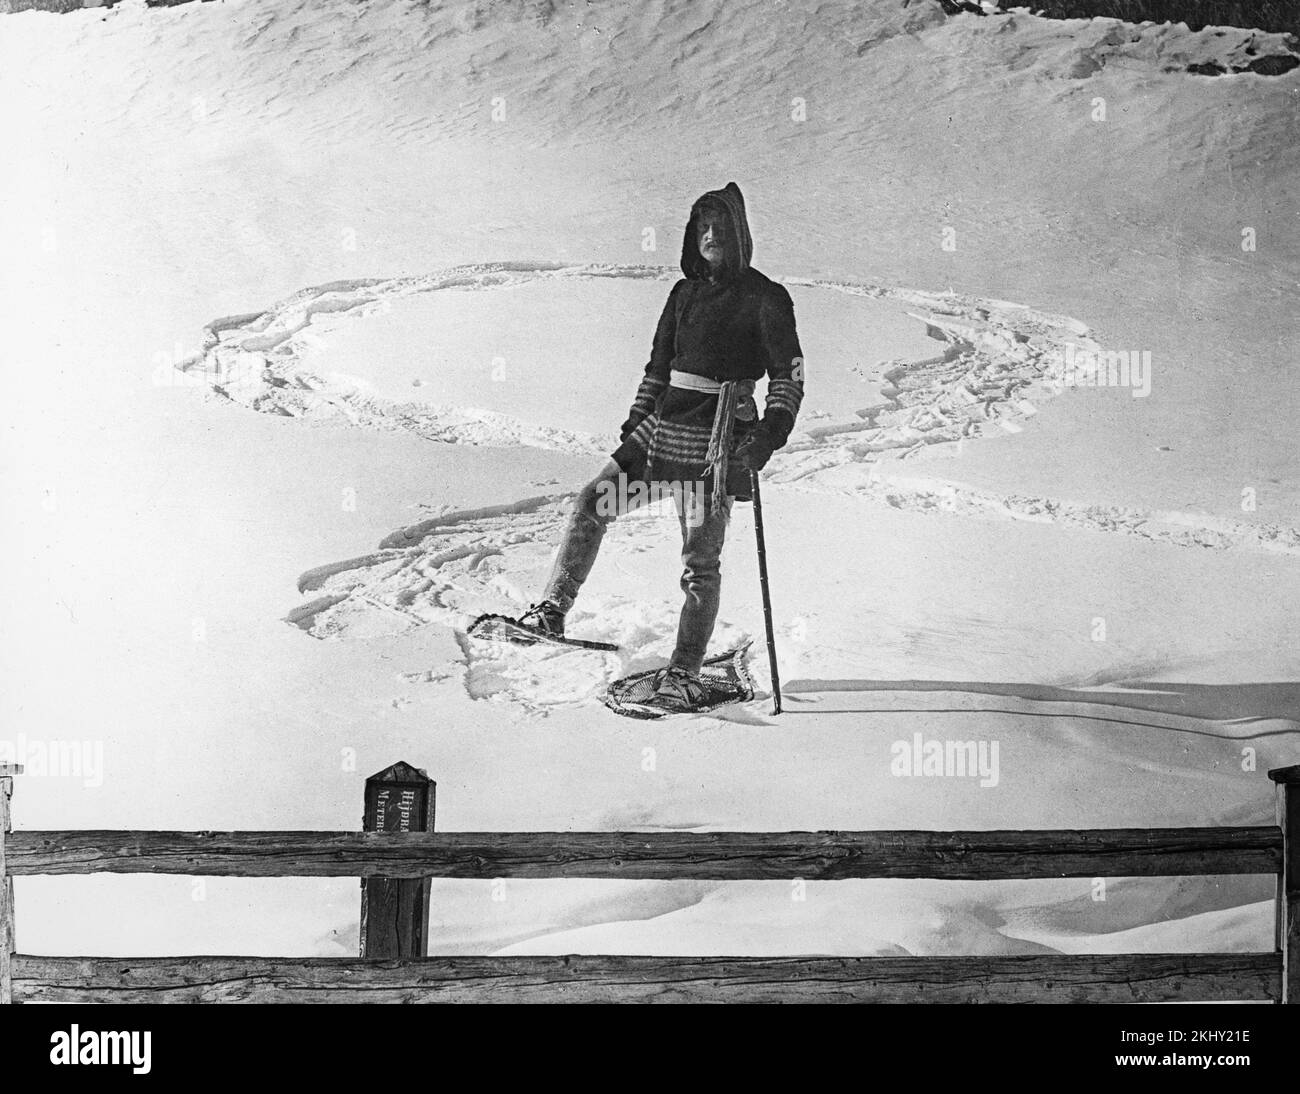 Una fotografia in bianco e nero dei primi anni del 20th che mostra un uomo che indossa scarpe da neve e abiti caldi che posa su una zona innevata nelle Alpi francesi. Foto Stock